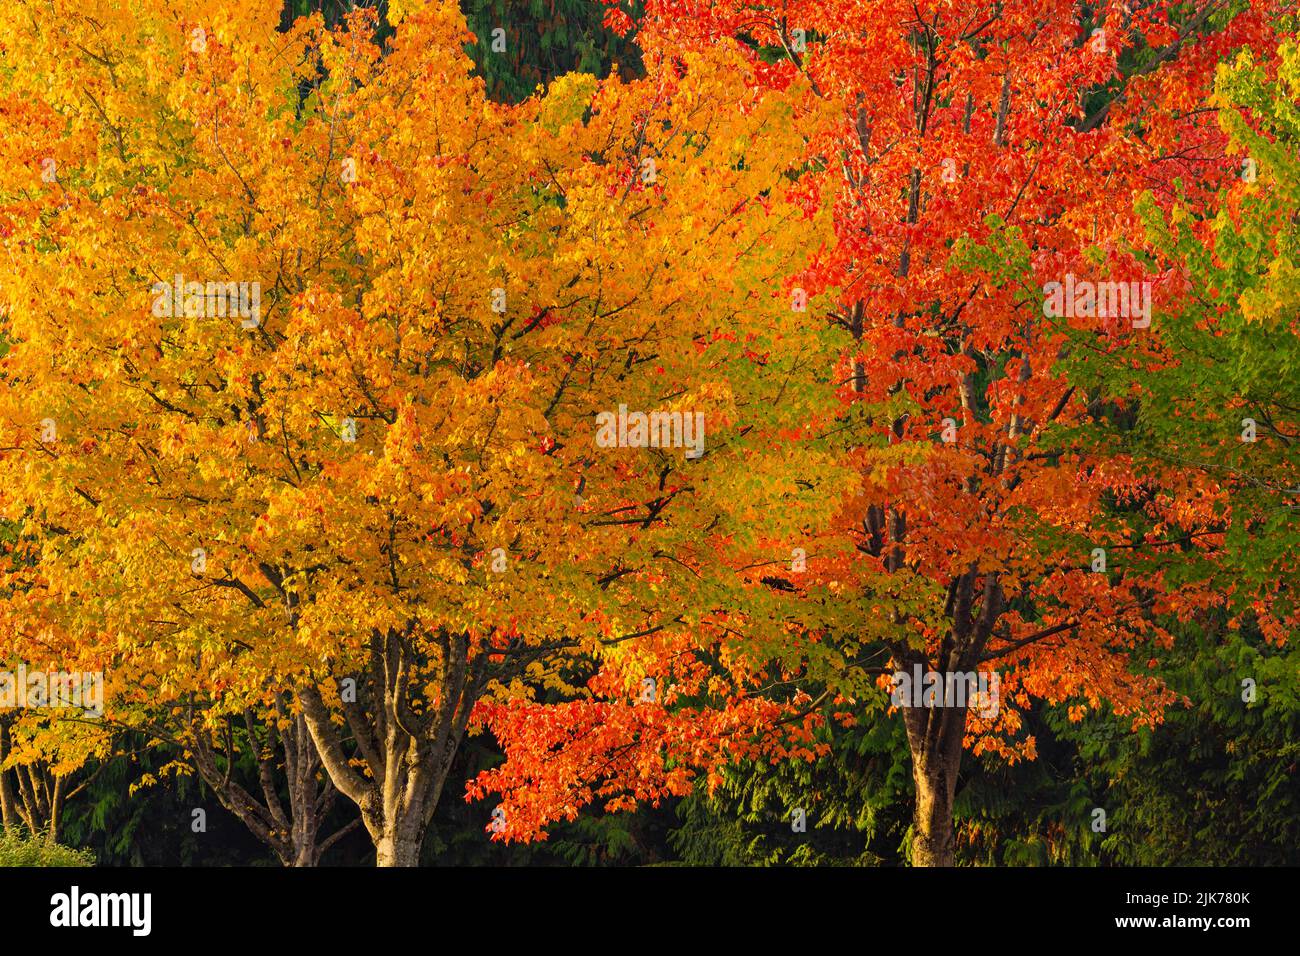 WA21805-00...WASHINGTON - couleur d'automne au Gene Coulon Memorial Beach Park situé sur les rives du lac Washington. Banque D'Images